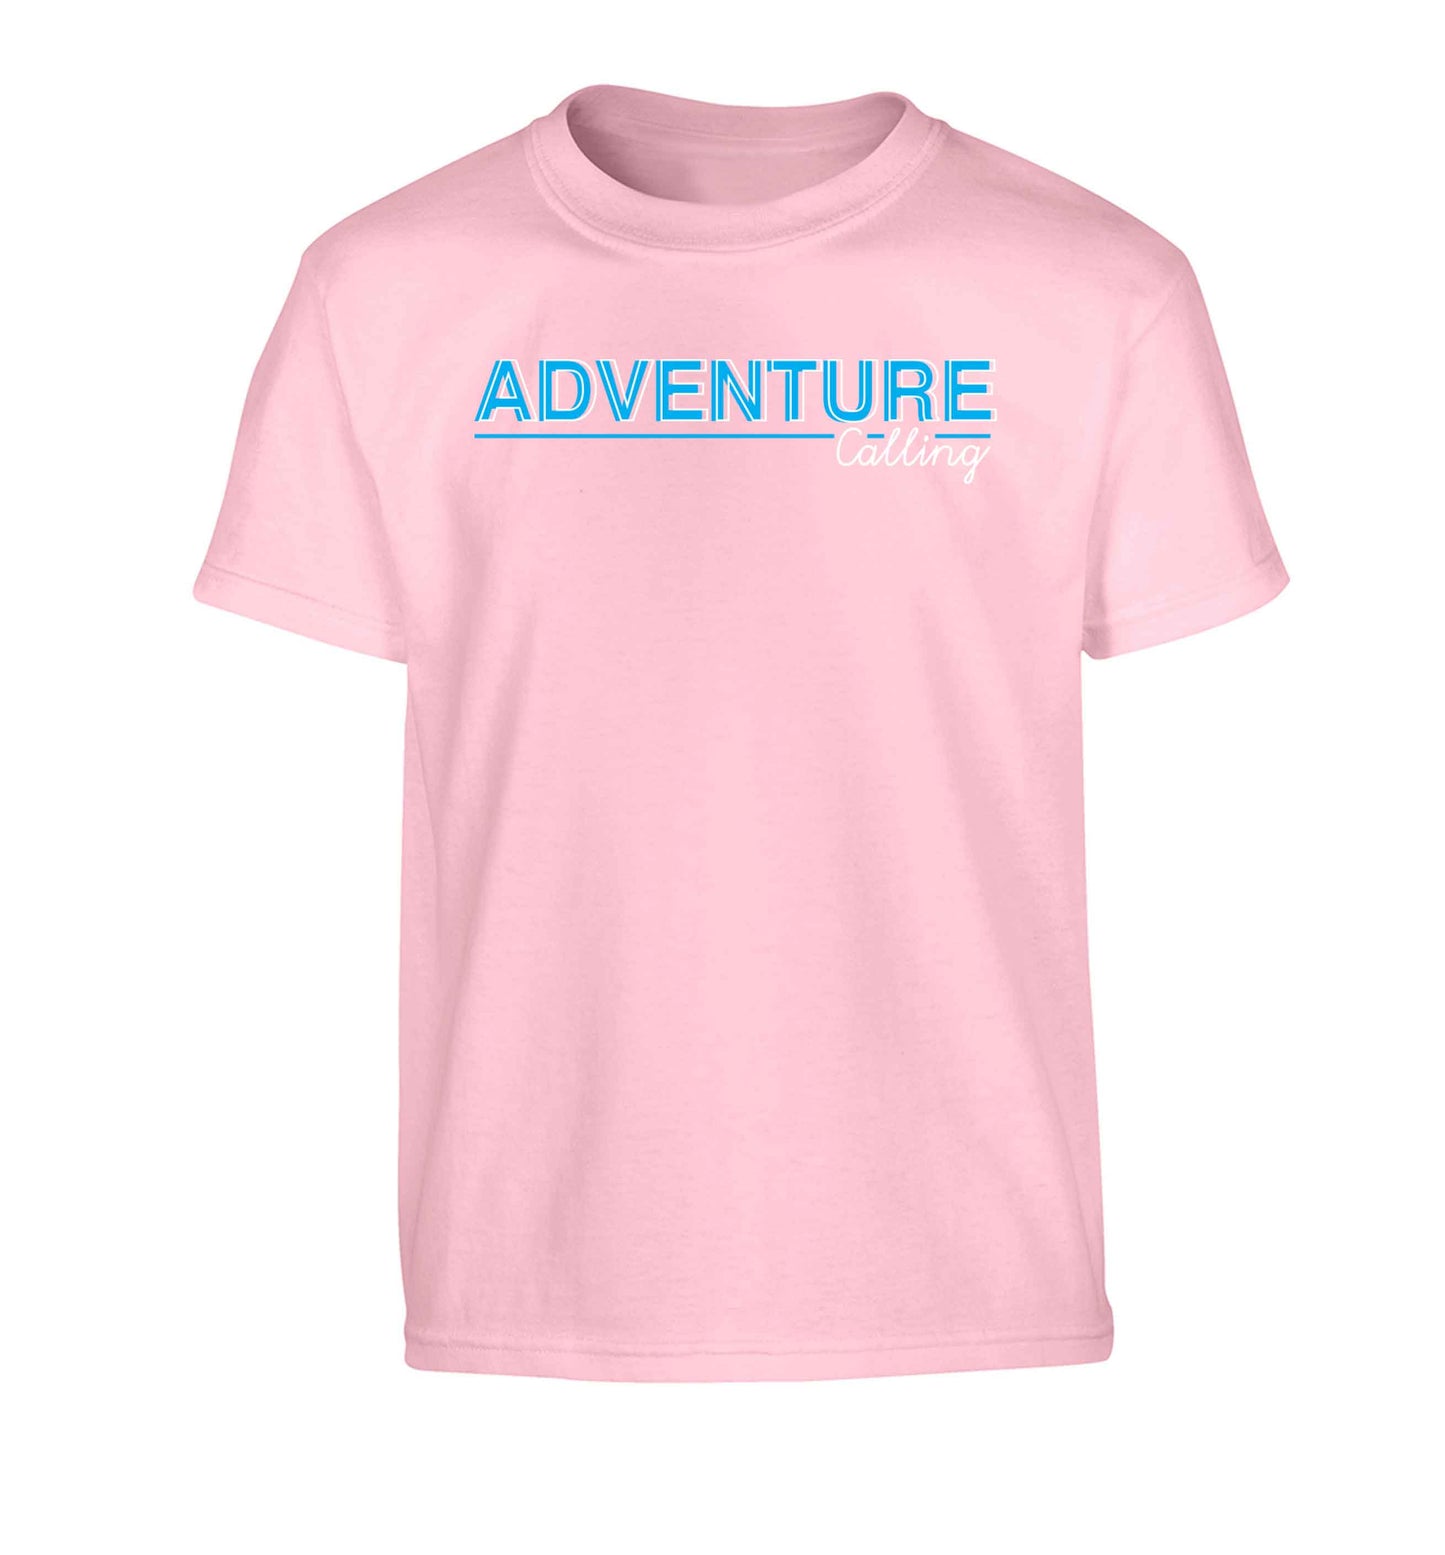 Adventure calling Children's light pink Tshirt 12-13 Years